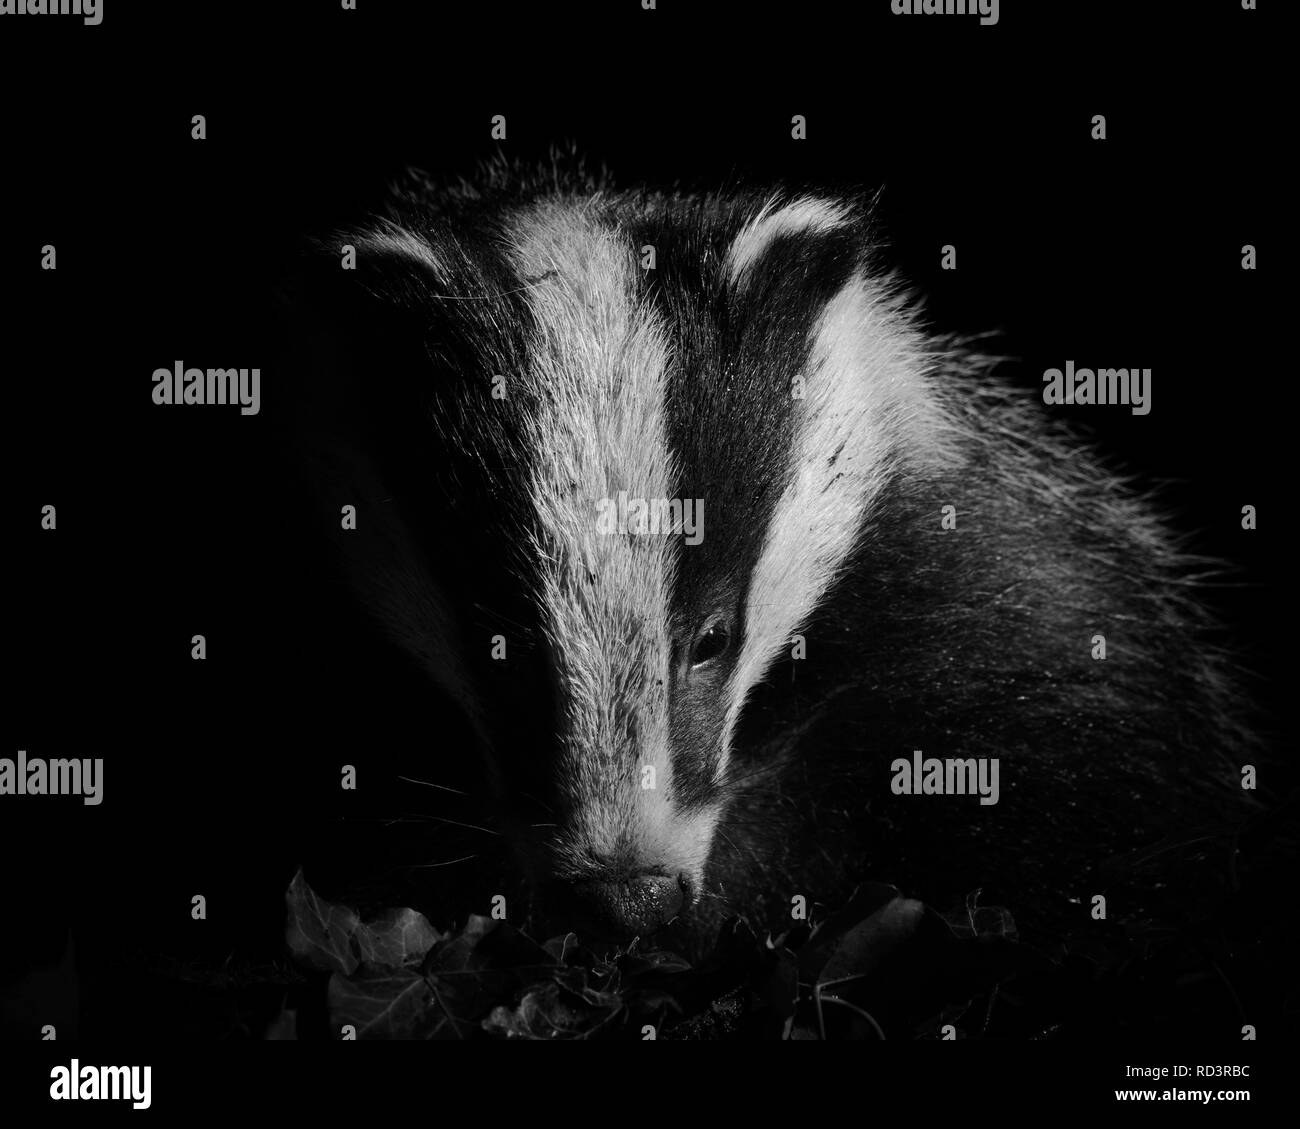 Un iconico Wild Badger a Sheffield, Regno Unito Badgers sono stati pesantemente perseguitati in tempi recenti ma sono sorprendenti per vedere, molto timido e sfuggente. Foto Stock